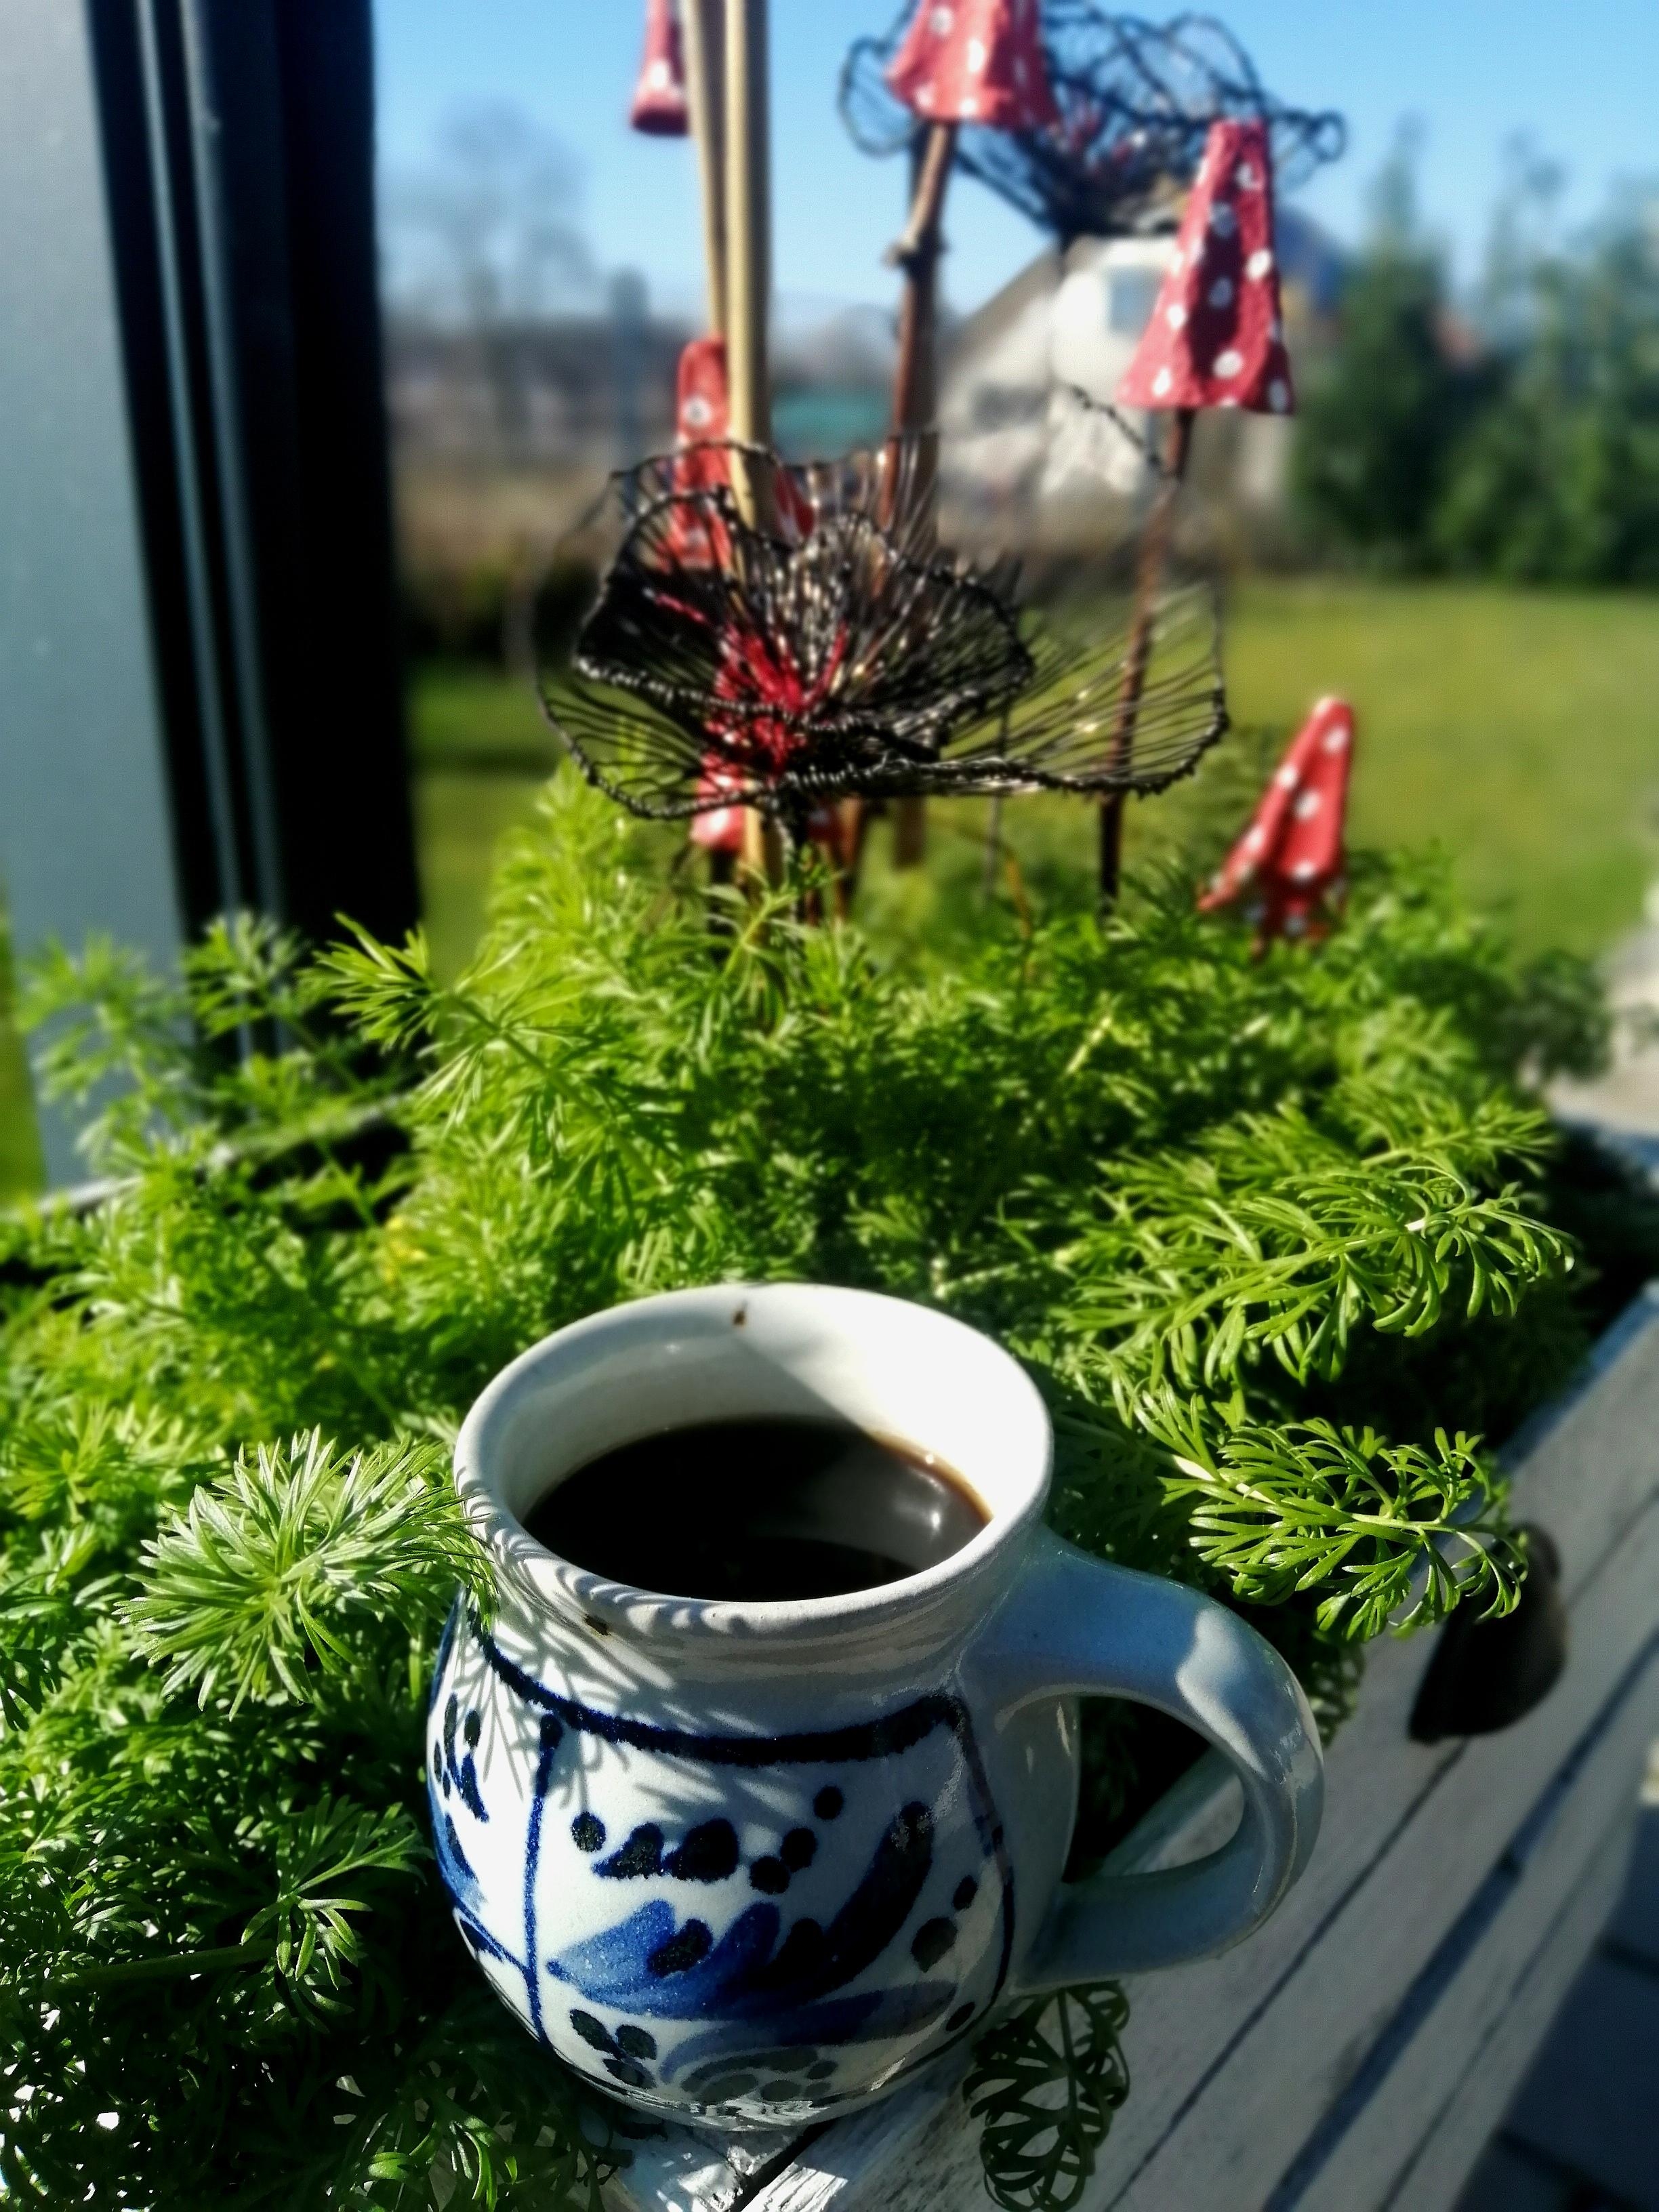 Kaffee ☕  aus der Lieblingstasse, Sonne🌞 und Garten #kaffeehilft #foodchallenge #garten #kaffee #pflanzen 